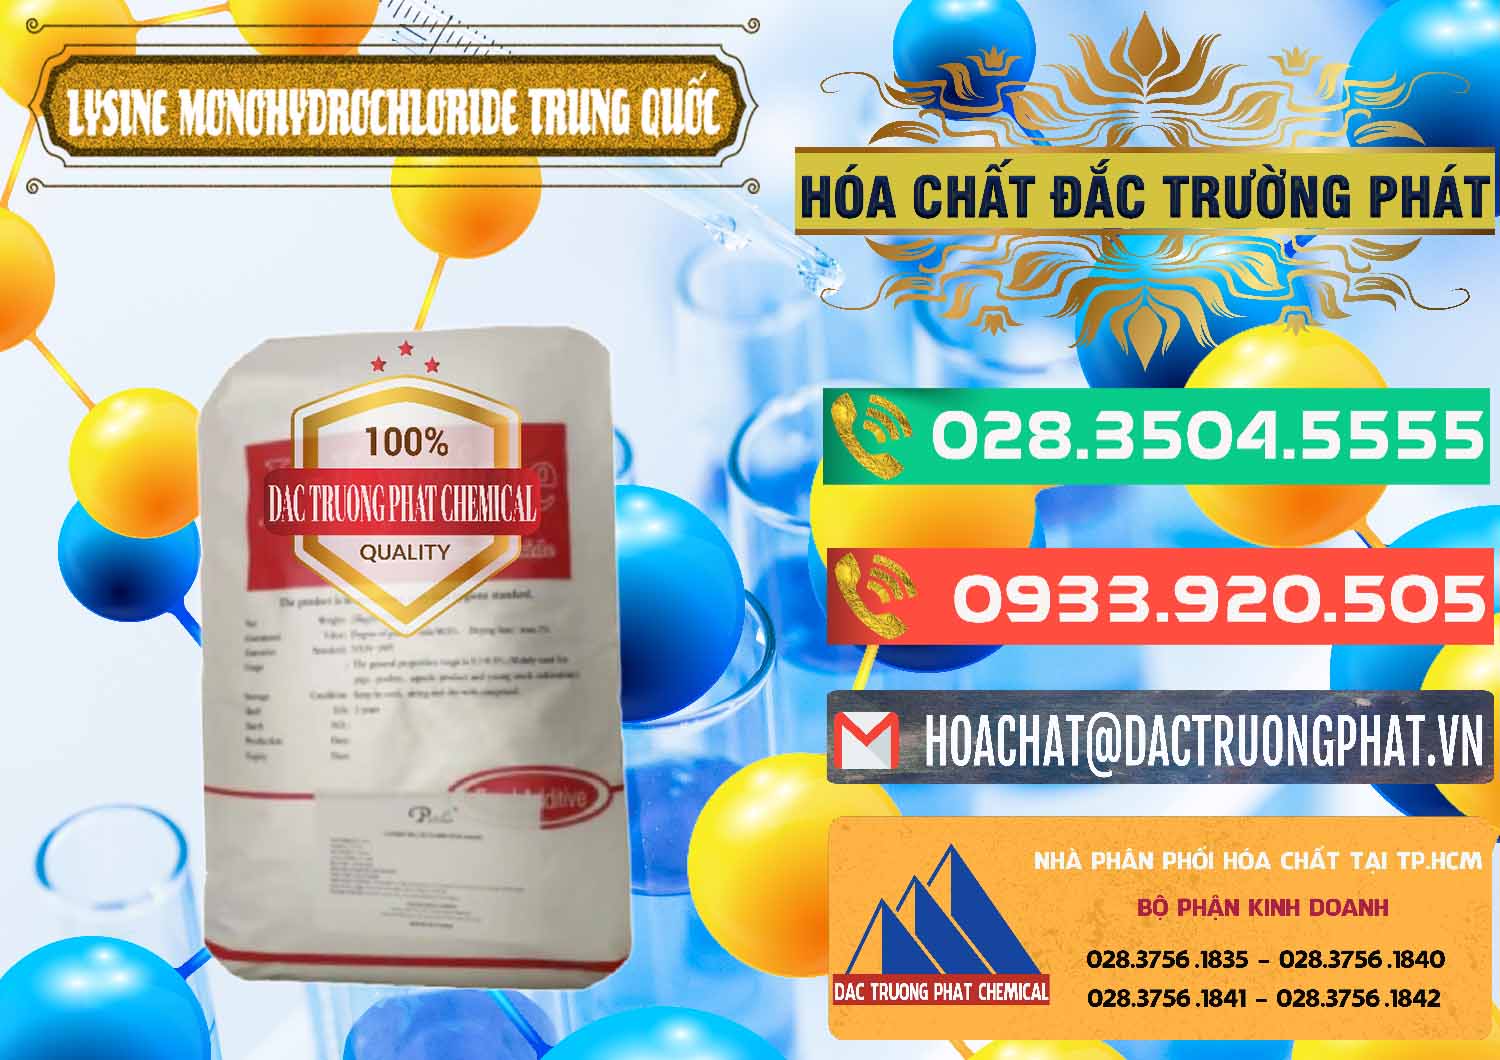 Cty chuyên cung ứng & bán L-Lysine Monohydrochloride Feed Grade Trung Quốc China - 0454 - Nơi chuyên phân phối - bán hóa chất tại TP.HCM - congtyhoachat.com.vn